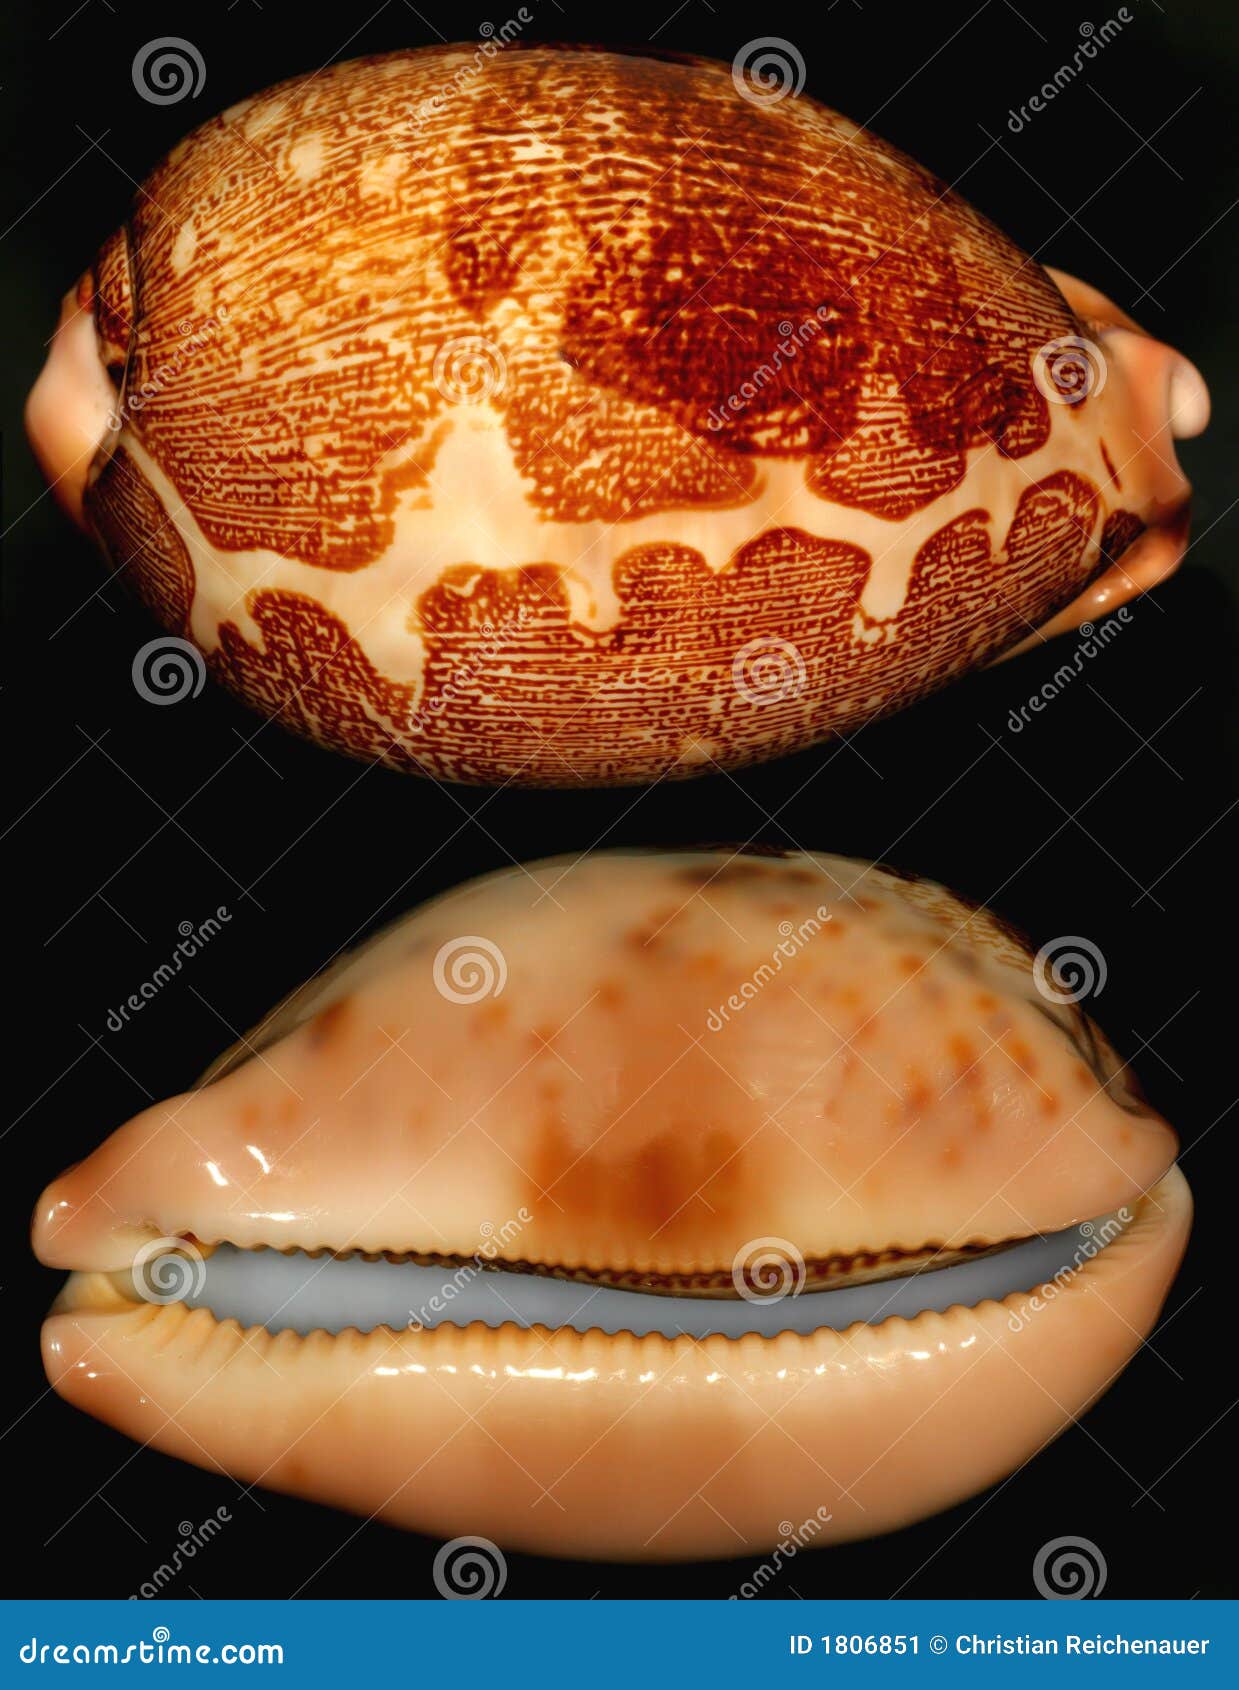 beautiful snail shell